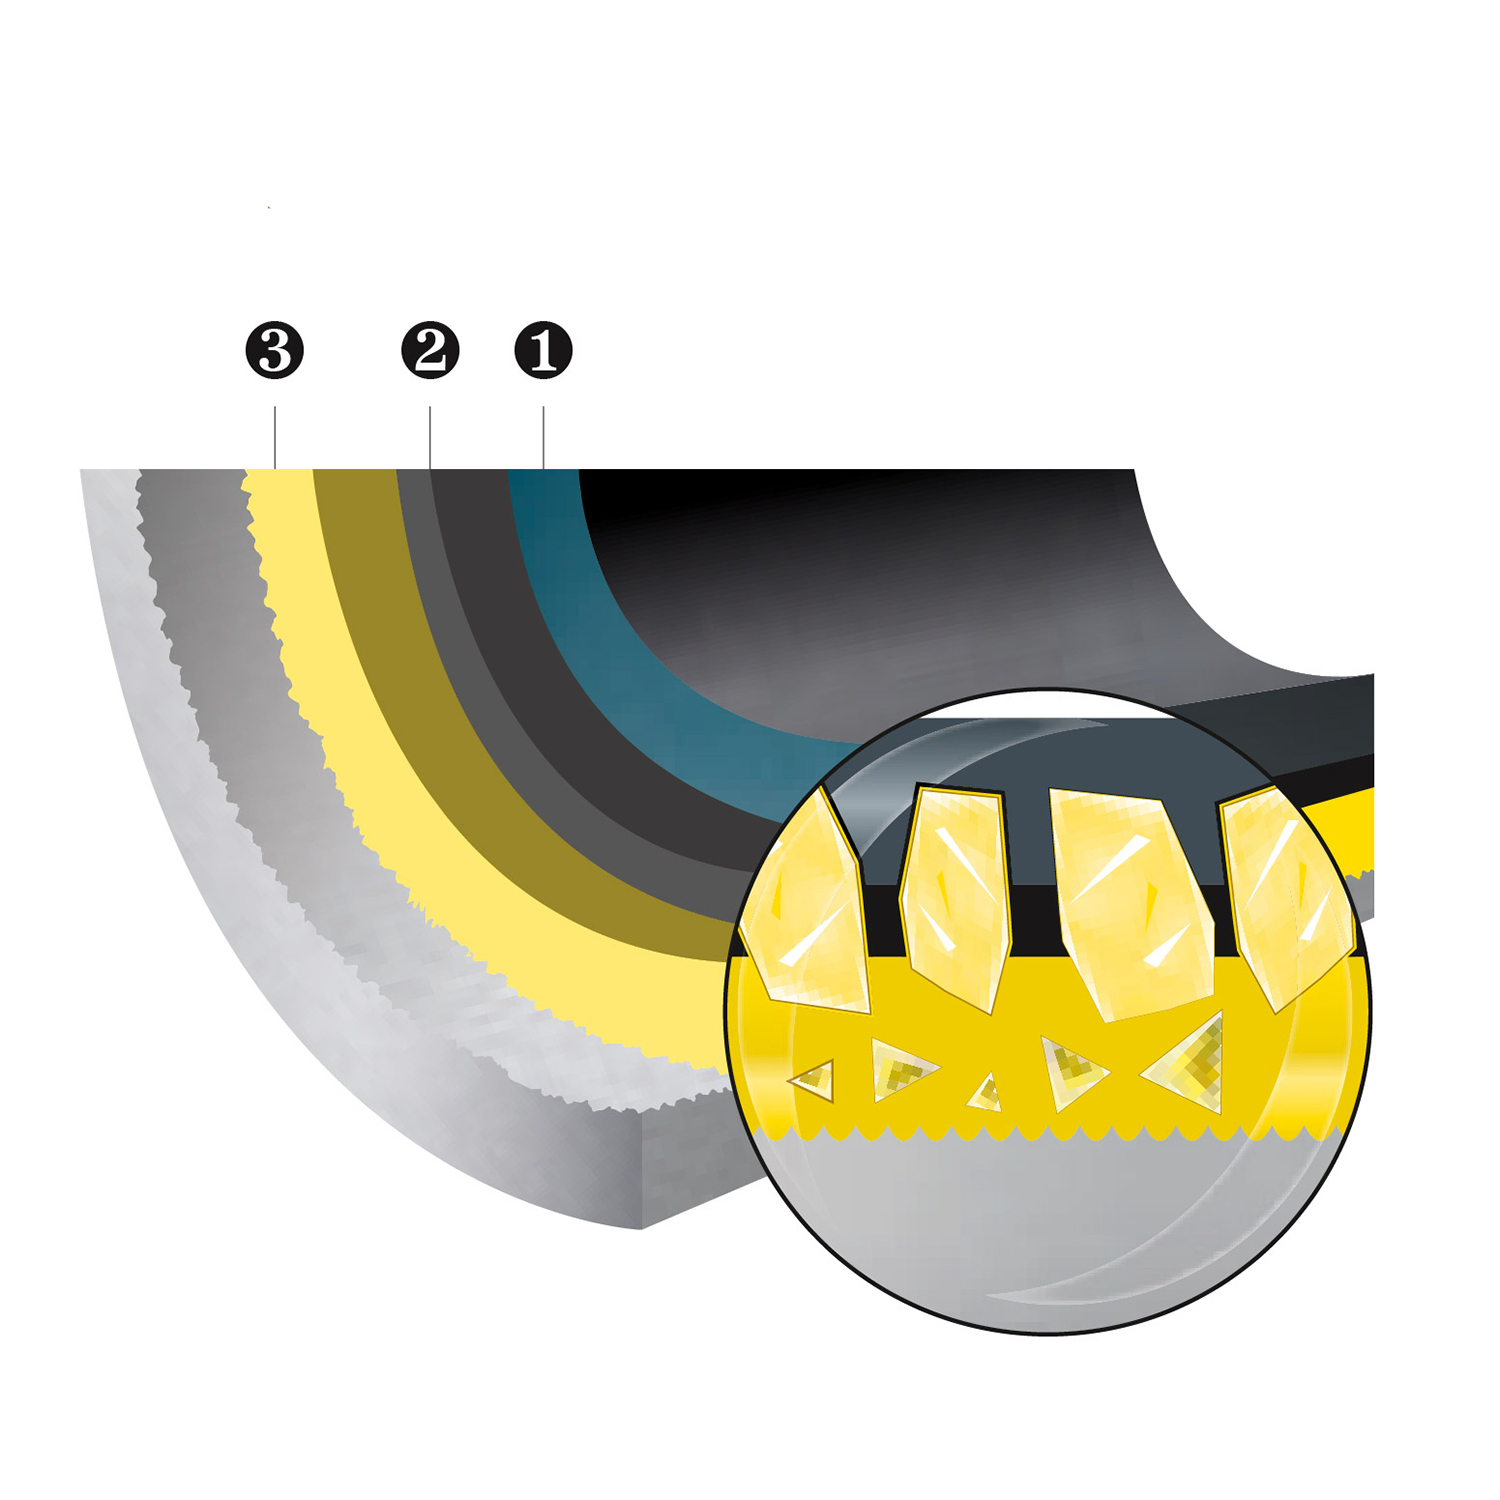 Smile MGK-15 Cazuela Alta inducción con tapa de cristal 20cm, 2,6 litros, Antiadherente ILAG sin PFOA, aluminio fundido, asas color madera, Apta todas las cocinas, vitroceramica, gas, lavavajillas